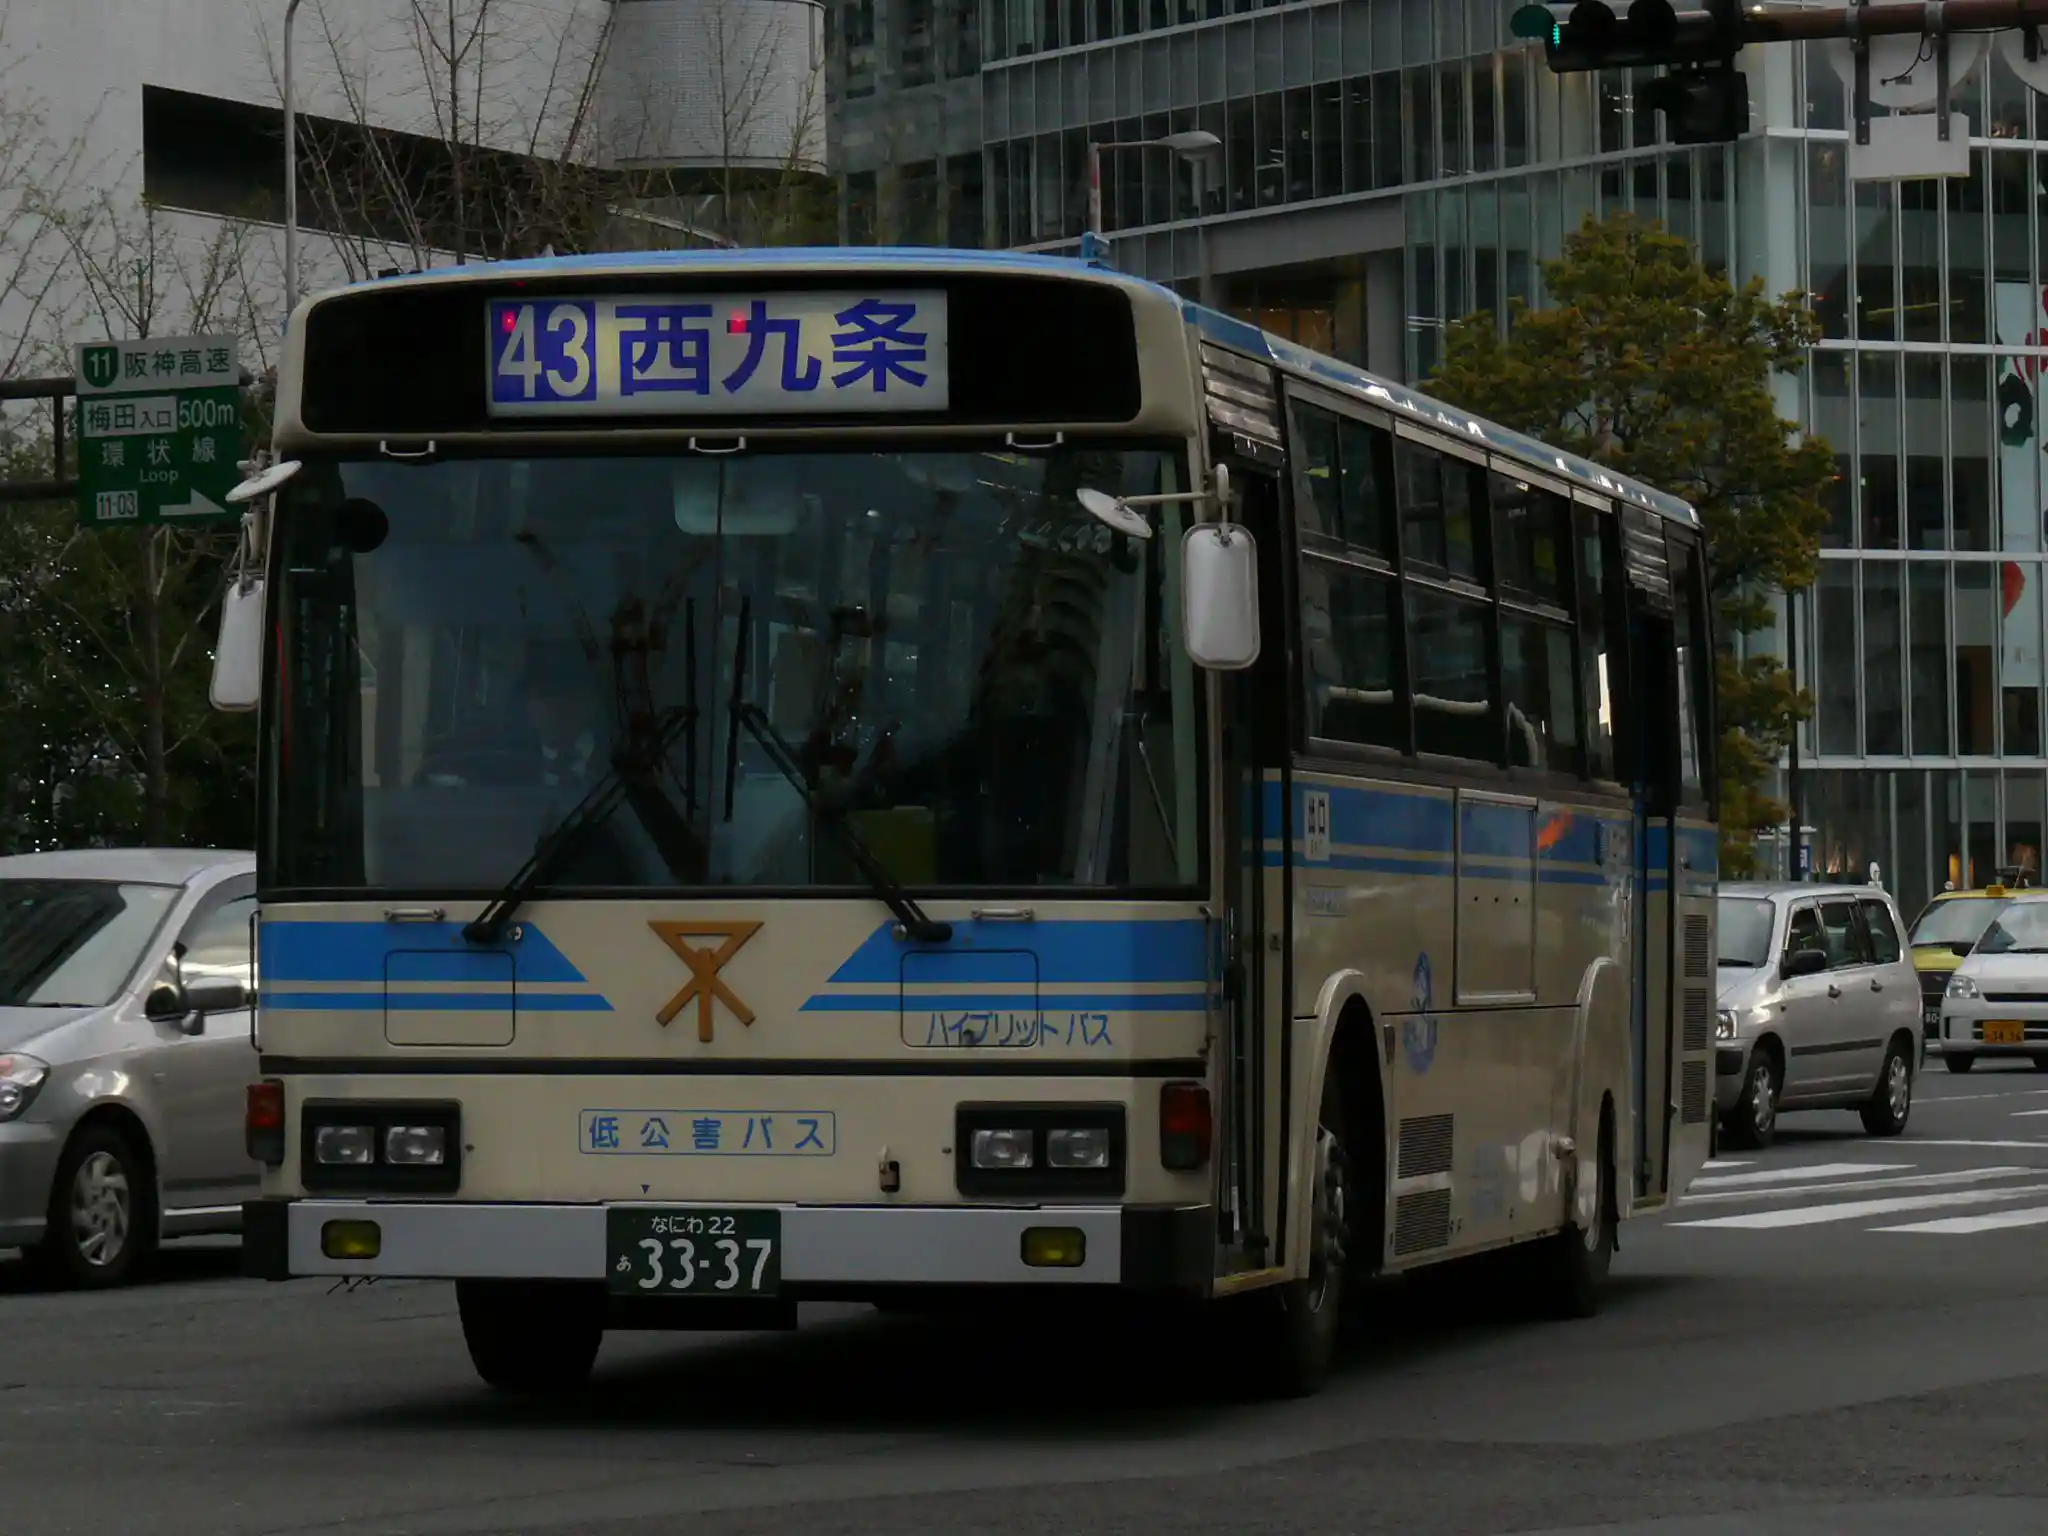 大阪市営バス日野ブルーリボン3337号_0.JPG